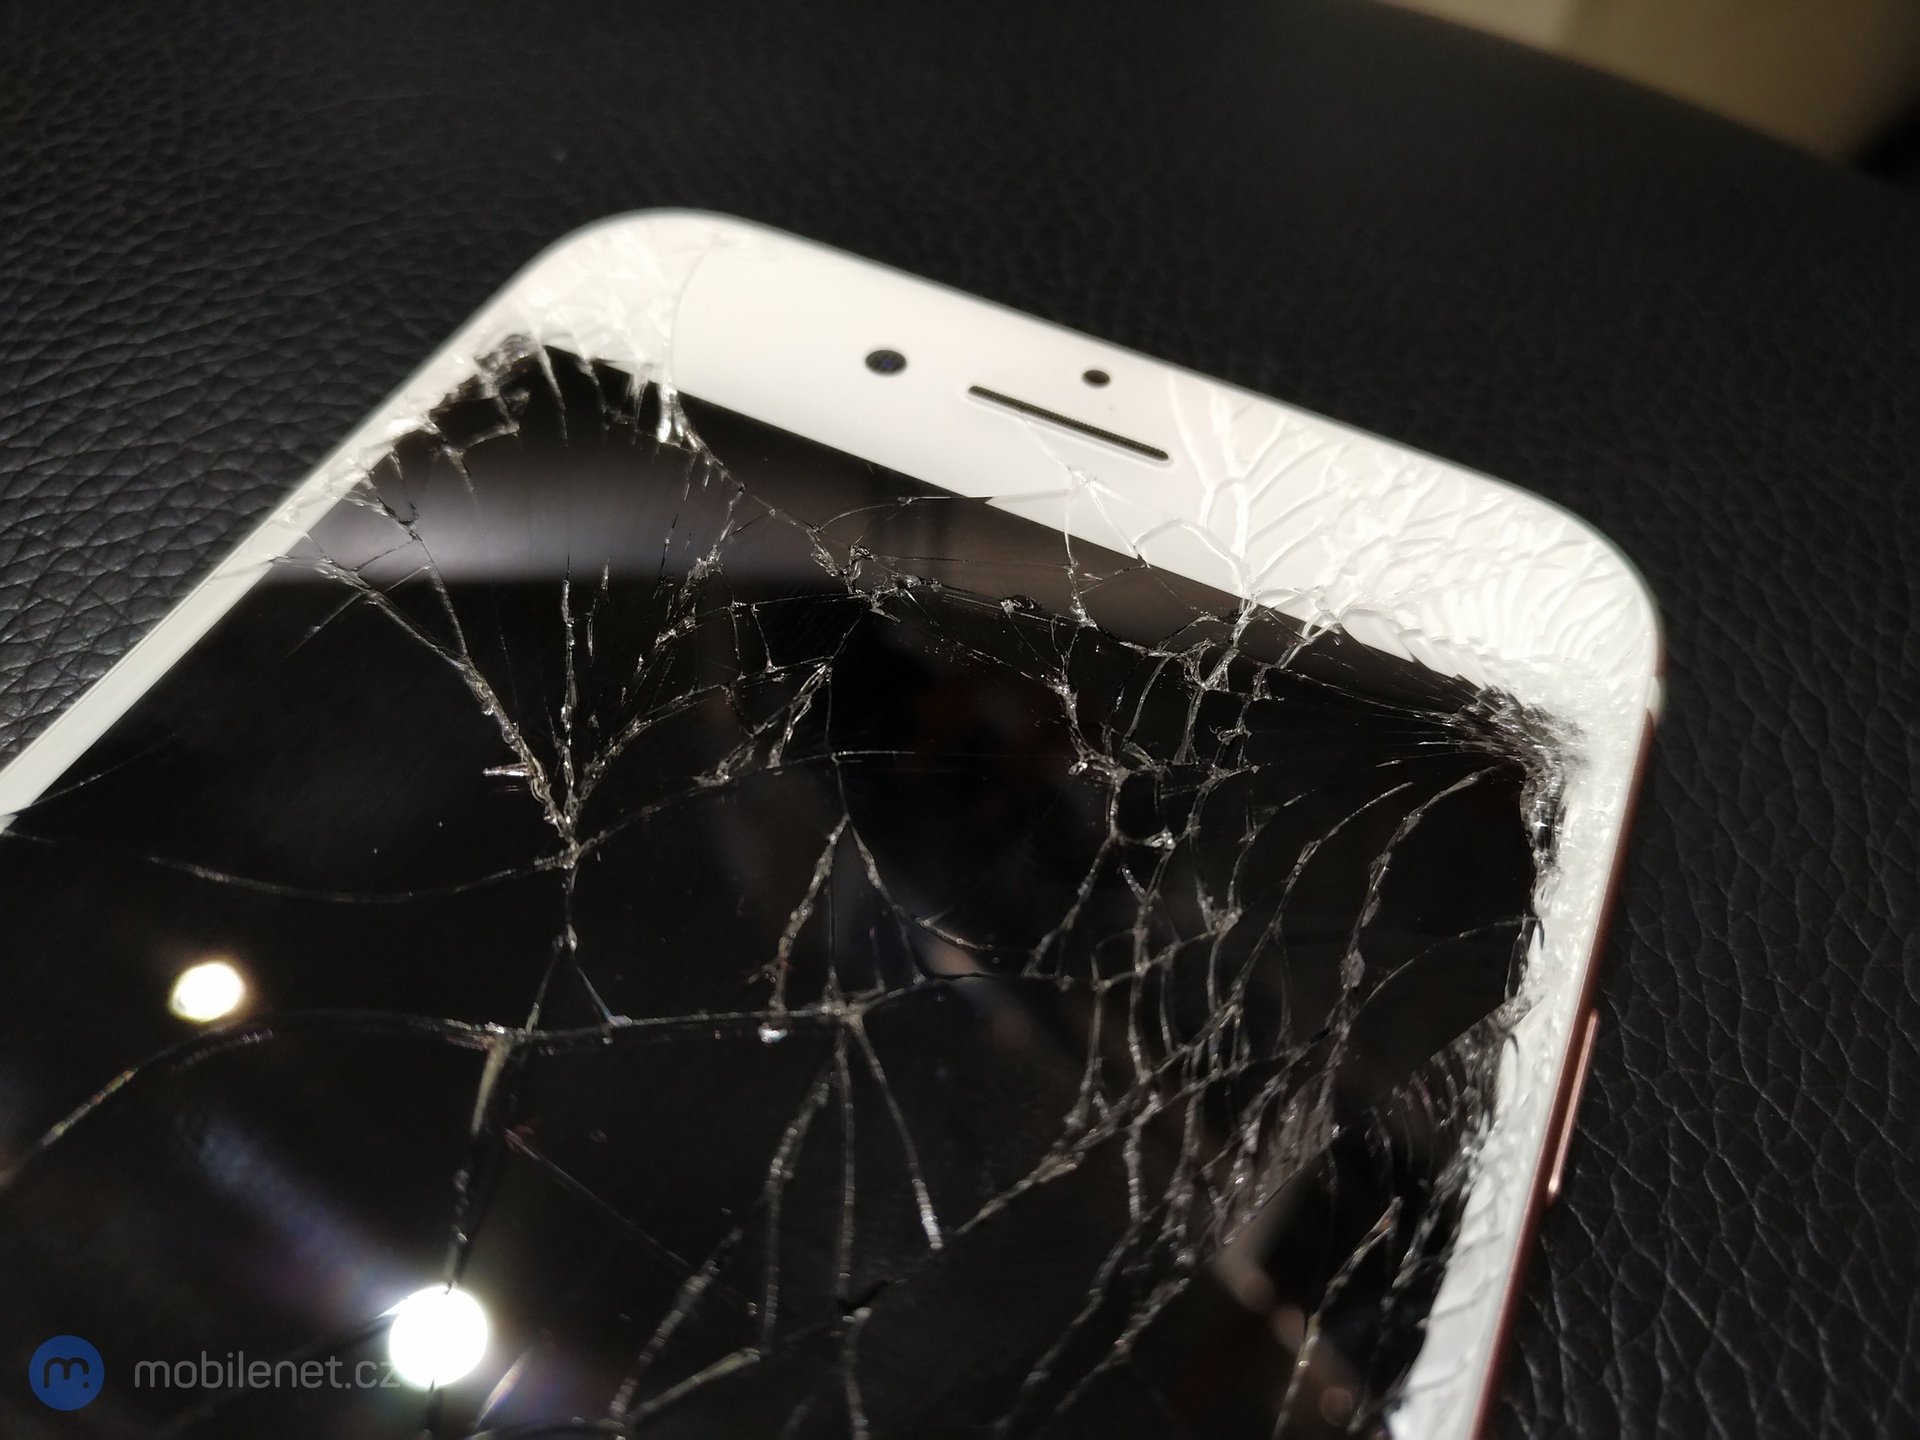 Rozbité sklo displeje na Apple iPhone 7